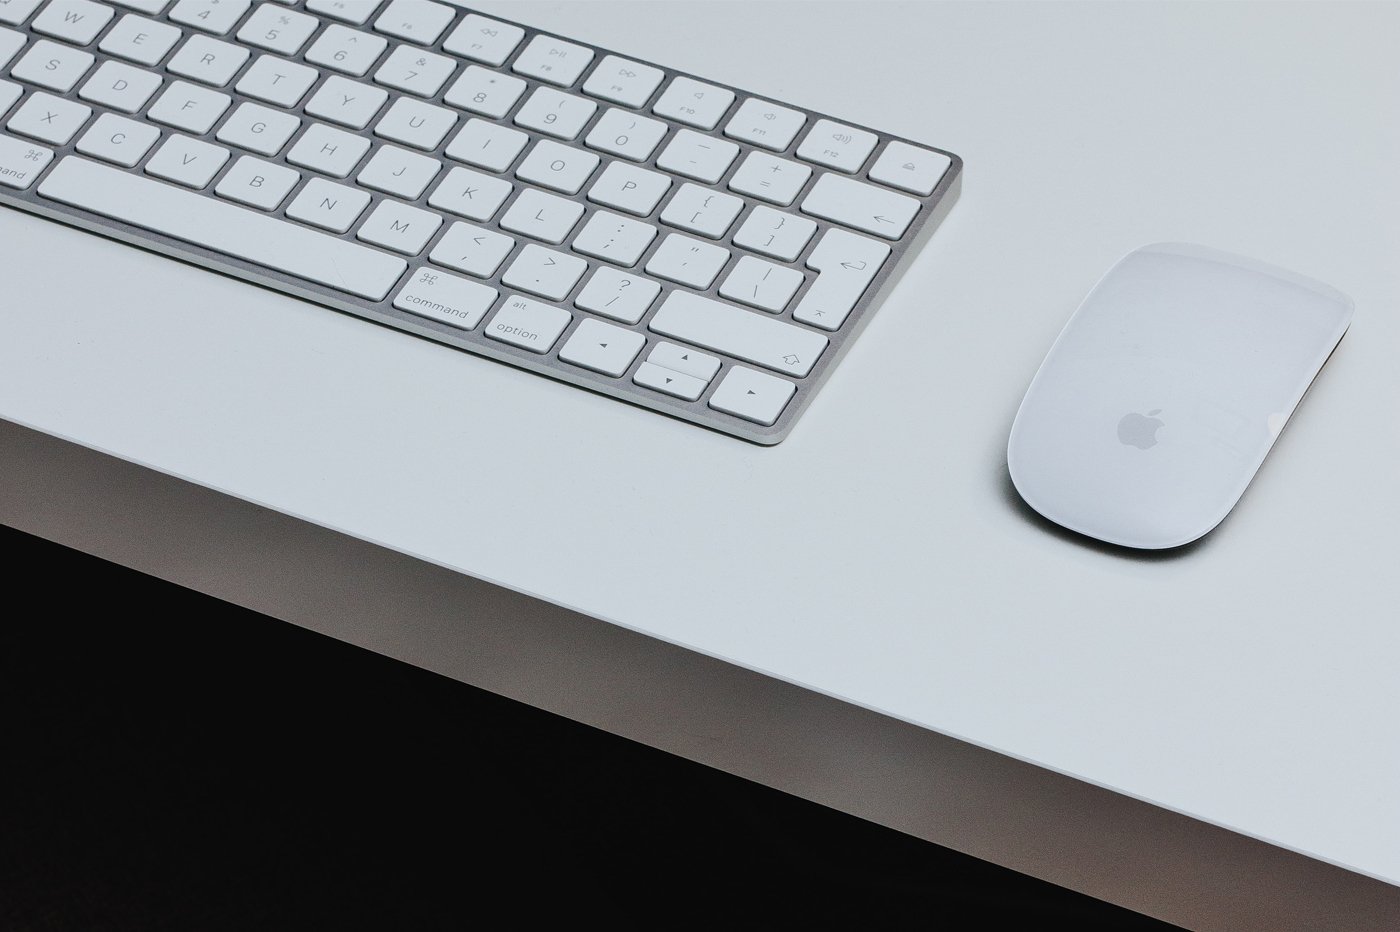 clavier mac filaire Apple français avec pavé numérique occasion